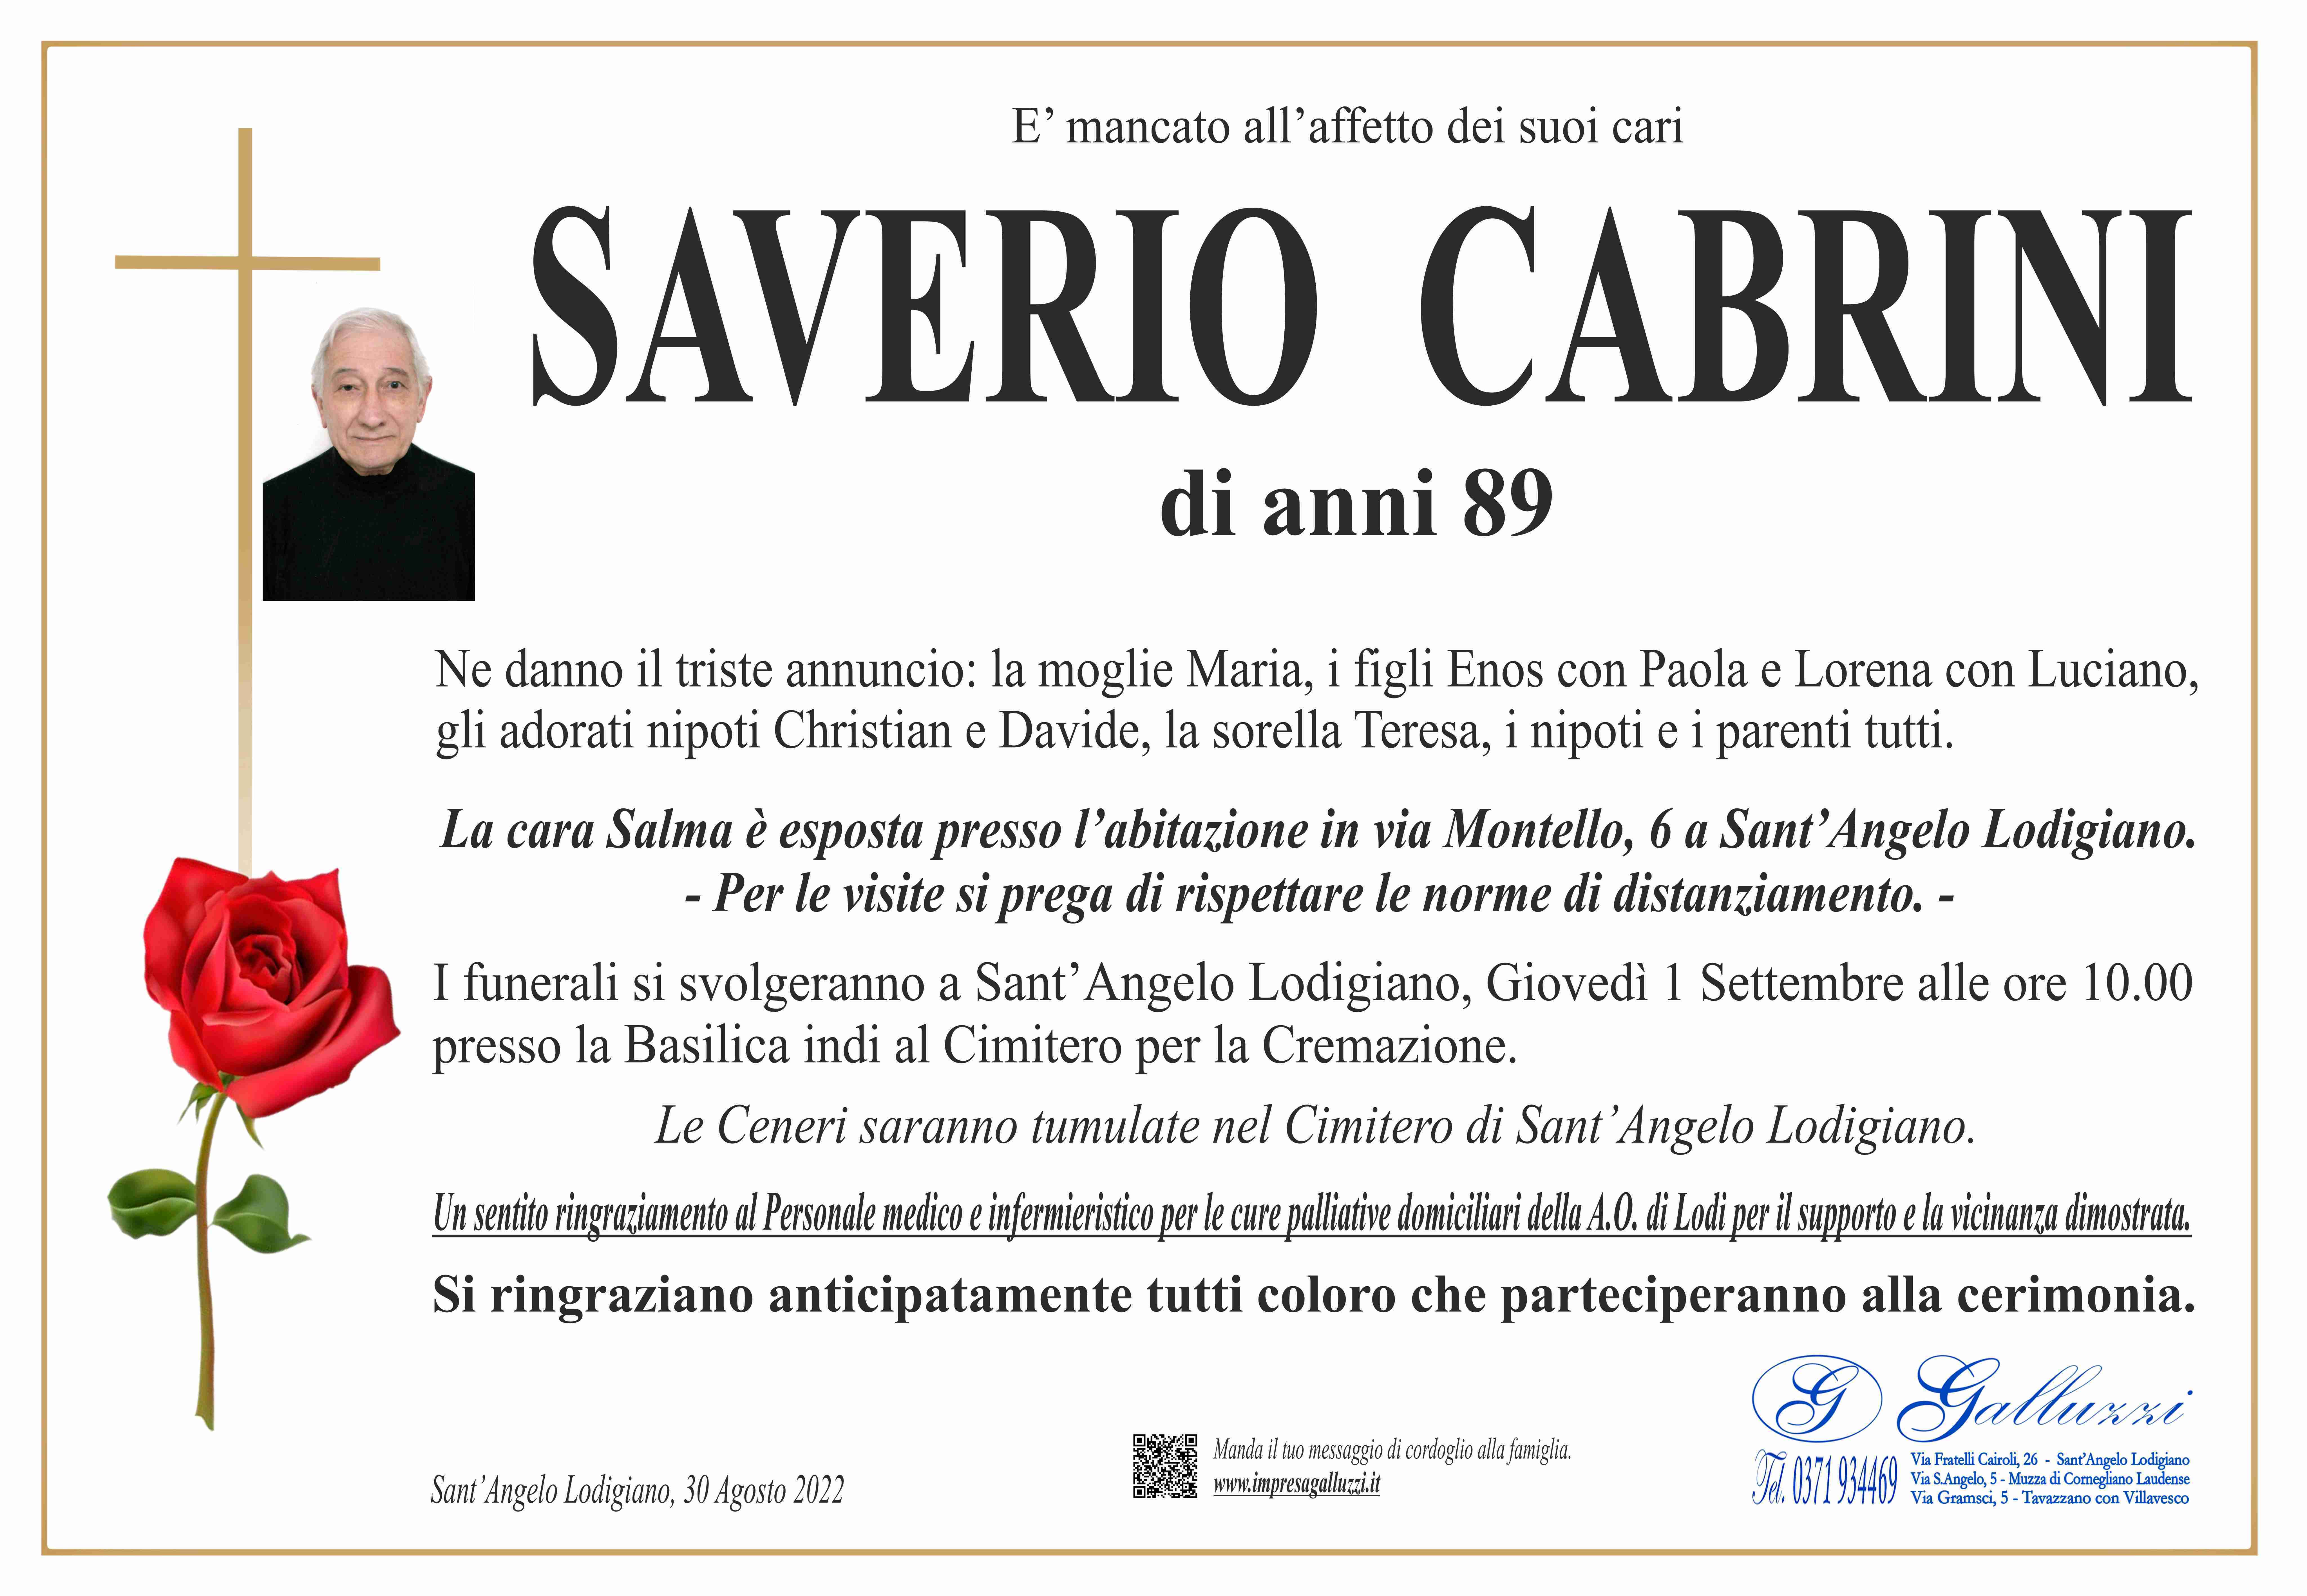 Saverio Cabrini